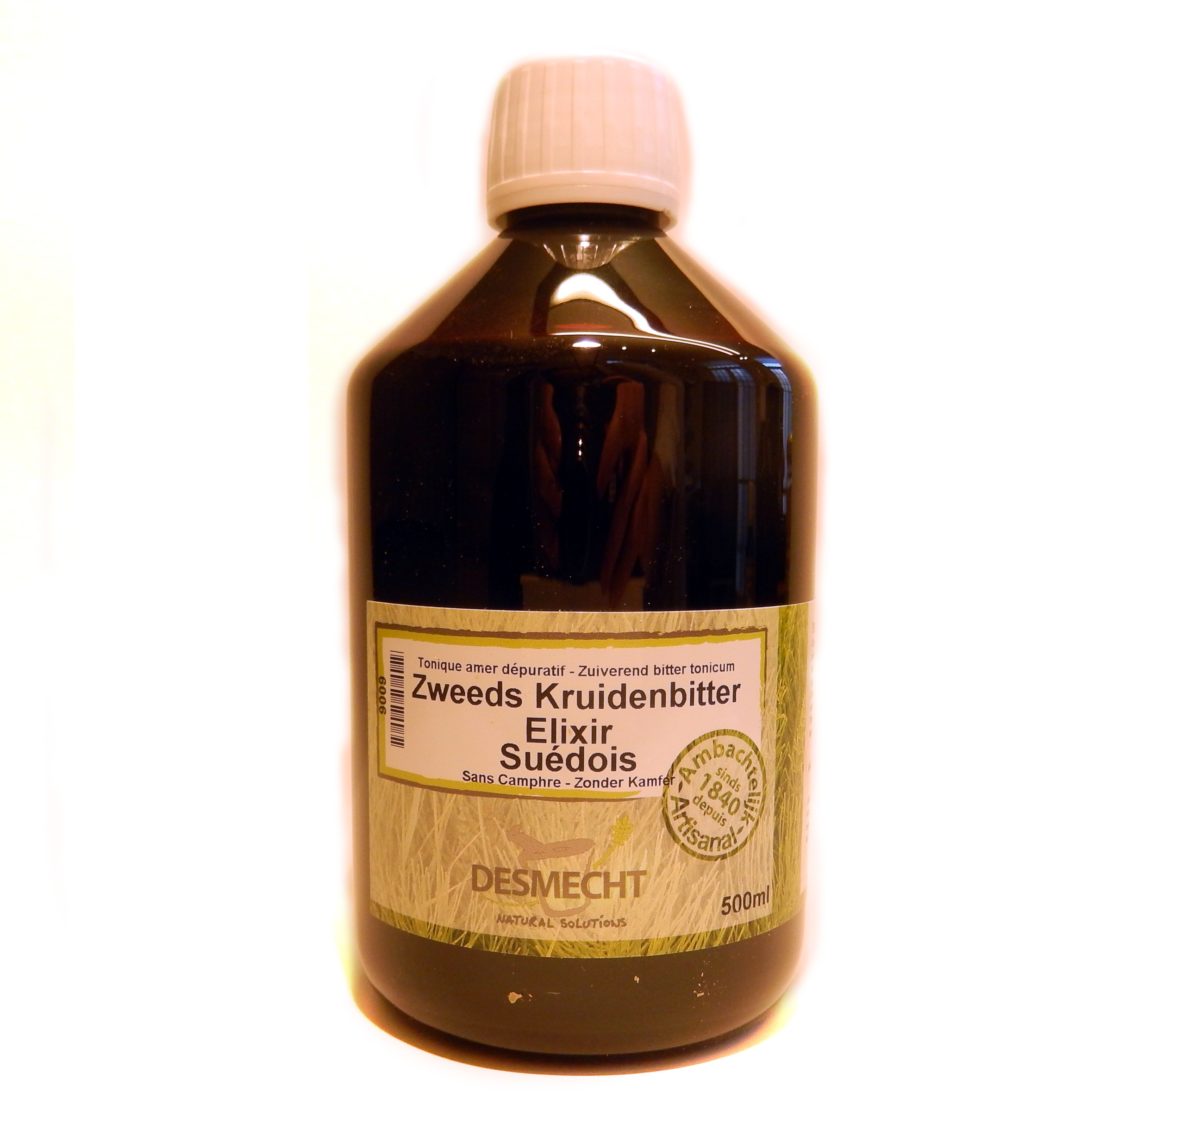 Remmen Uitgebreid Verhoog jezelf Online kopen: Zweeds kruidenbitter 500ml (recept ZONDER kamfer) - Het  traditioneel recept MET kamfer is eveneens beschikbaar (Het gebruik van  kamfer wordt afgeraden met een simultaan gebruik van homeopathische  producten)Ook beschikbaar in